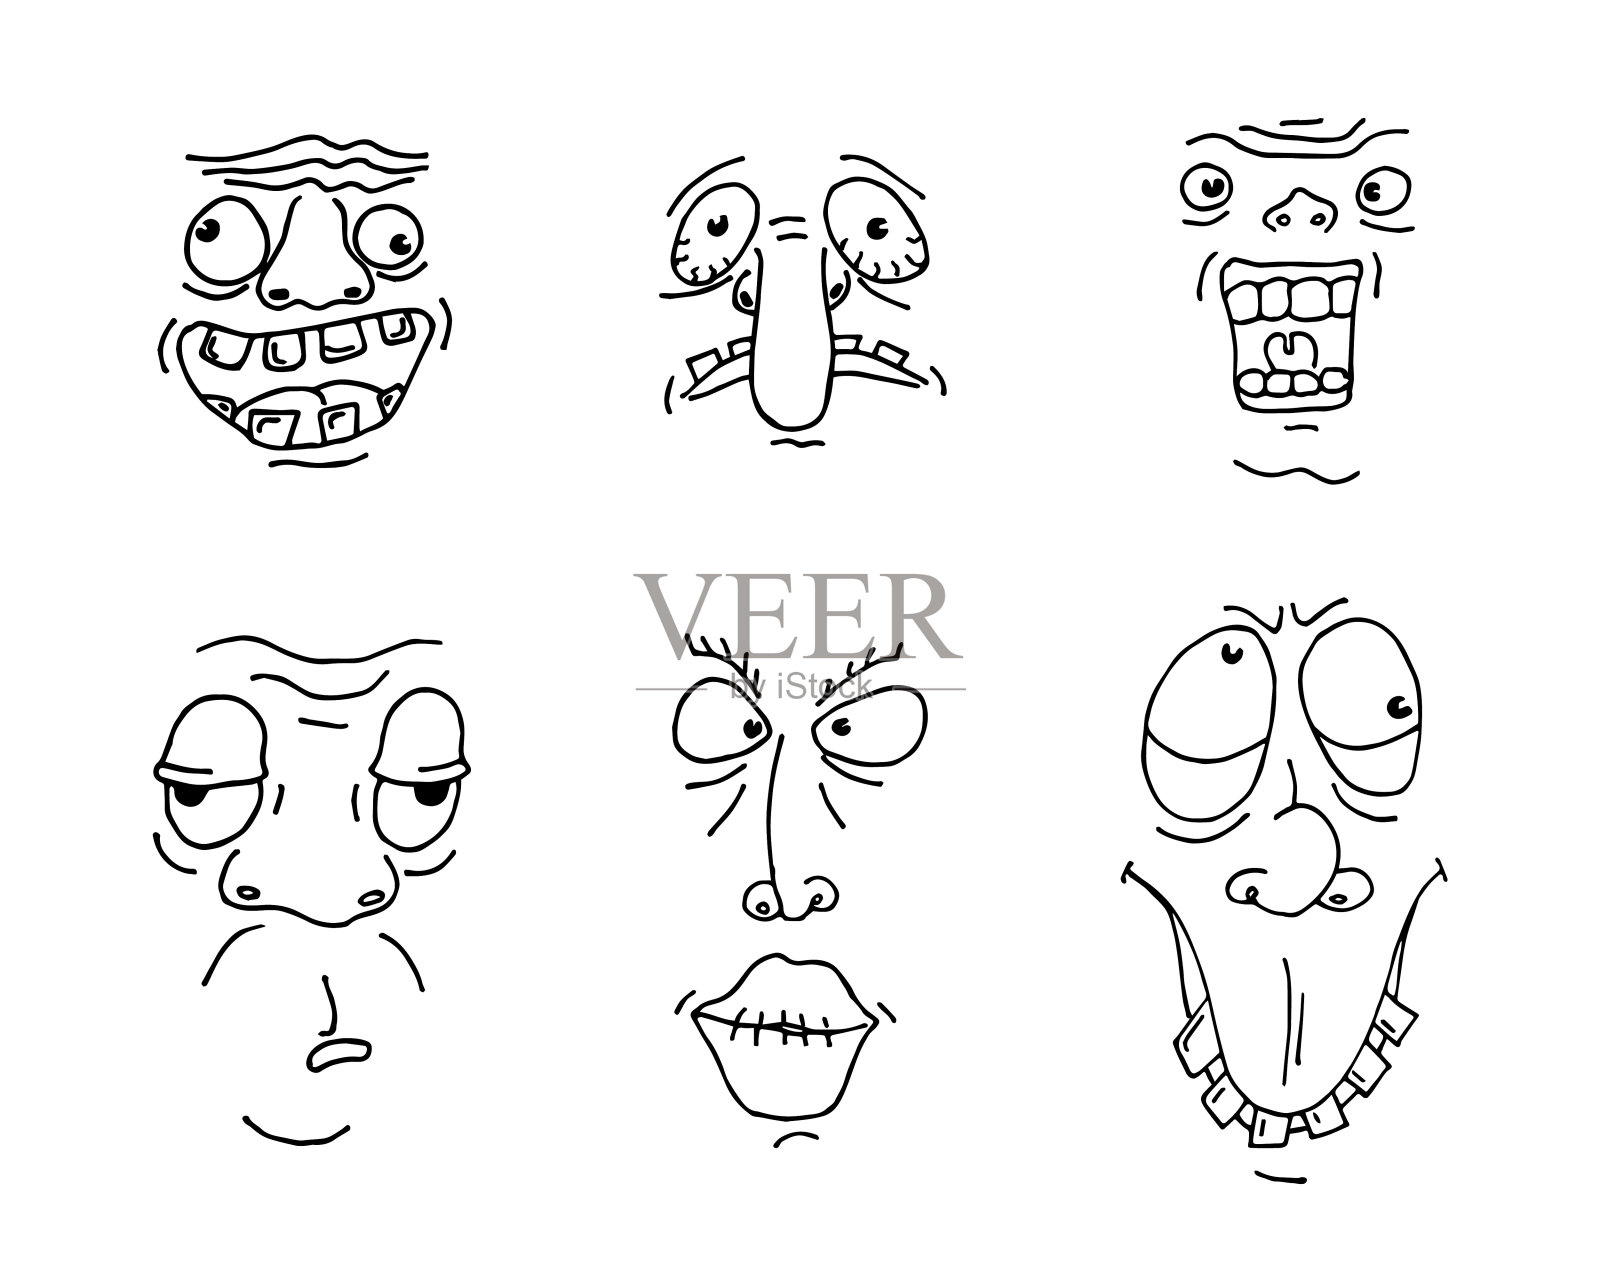 丑男人脸素描集。手绘轮廓涂鸦卡通怪物人物鬼脸集。不同的疯狂人物头像。矢量图插画图片素材